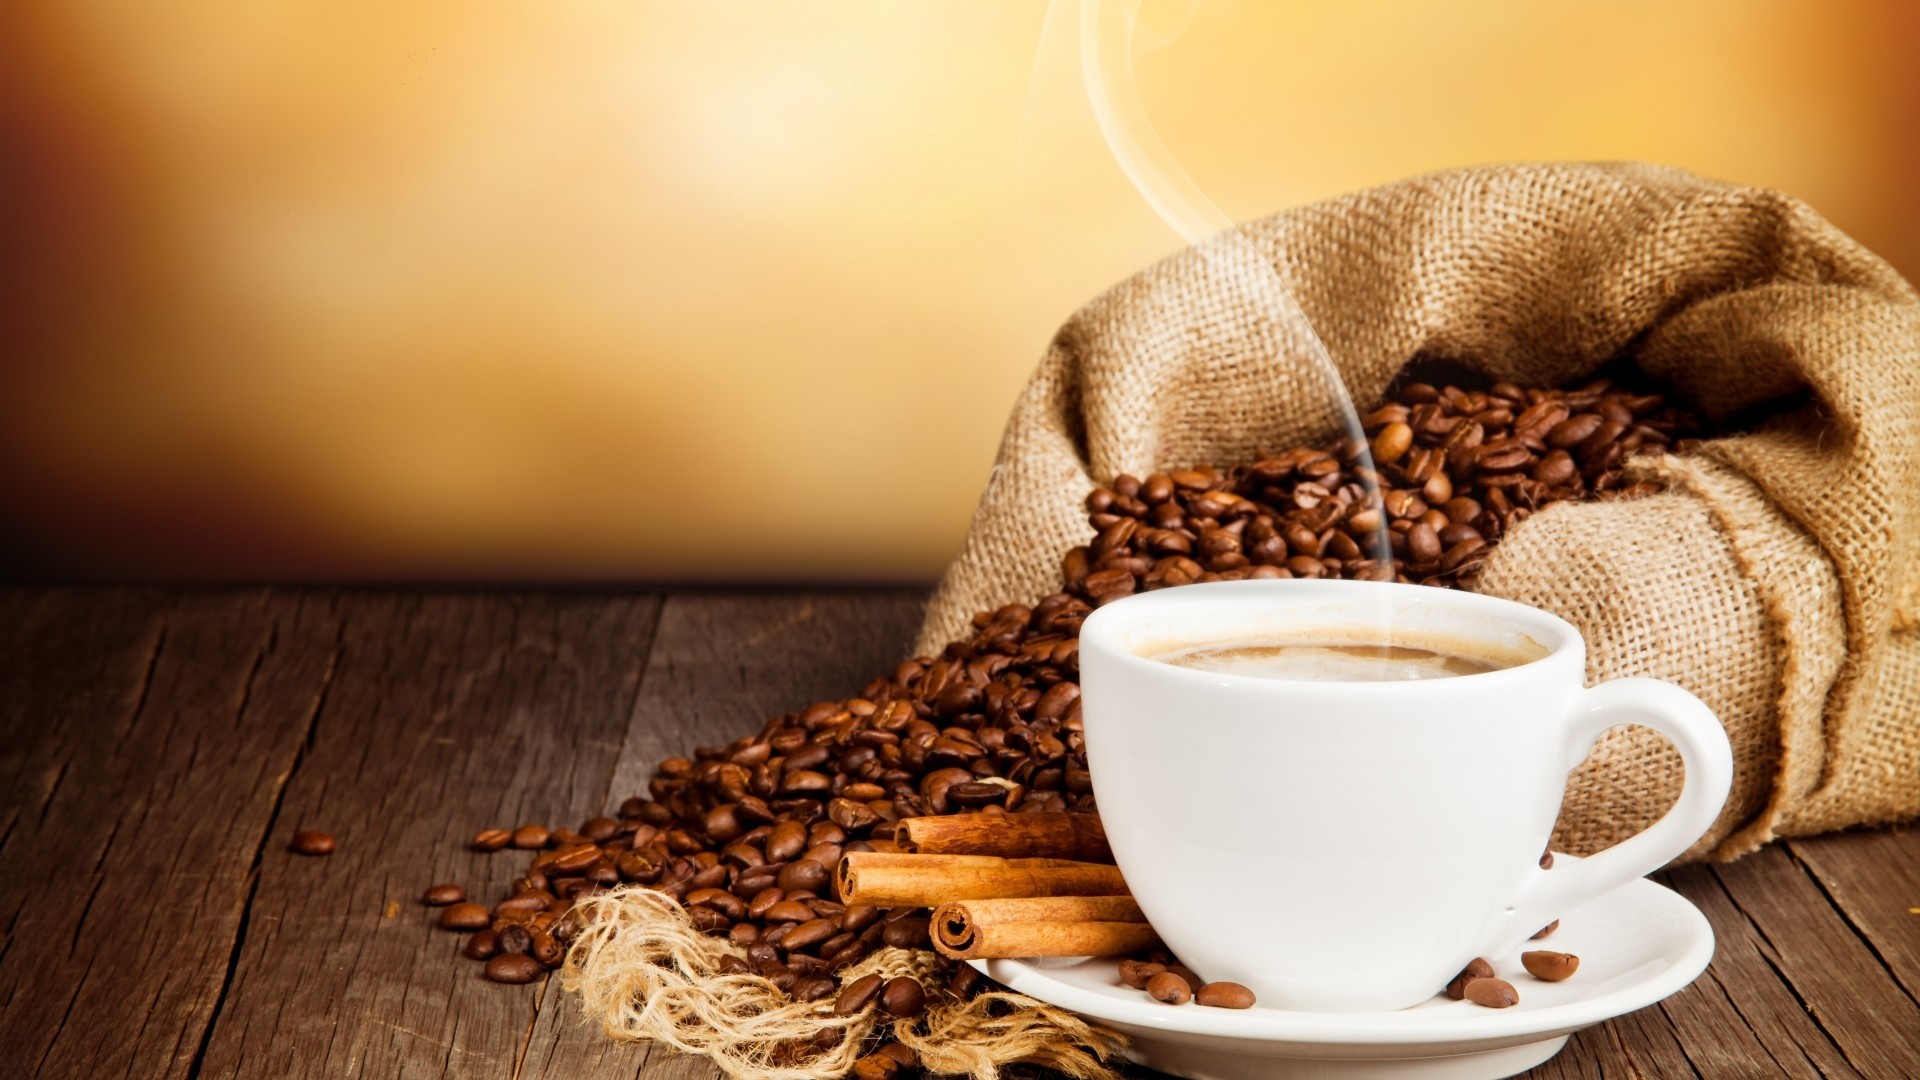 حداقل و حداکثر مجاز مصرف قهوه